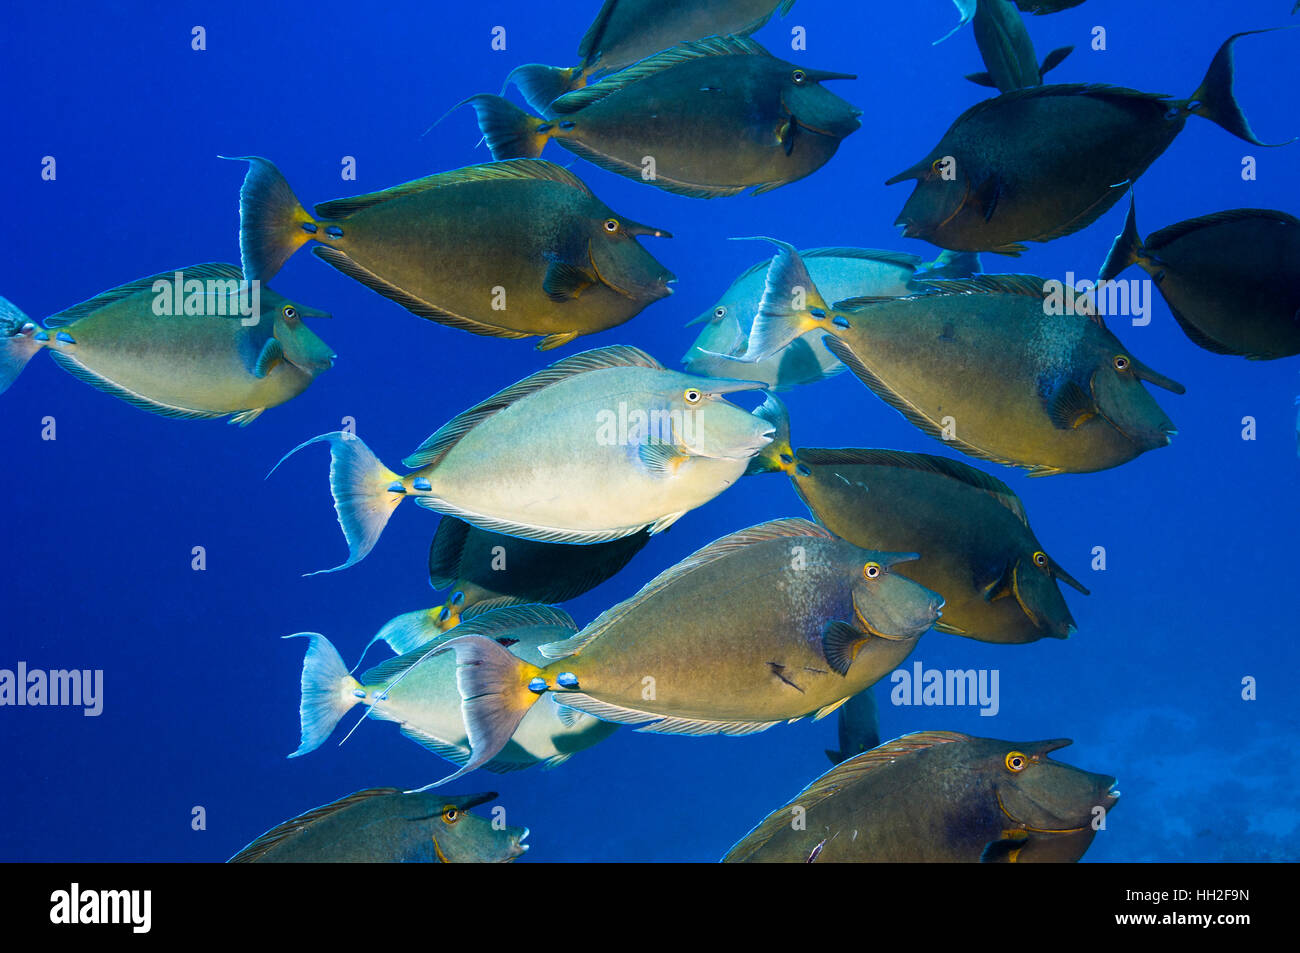 Bluespine goldfish ou tang Unicorn [Naso unicornis] à l'école repose sur le récif de corail. L'Egypte, Mer Rouge. Banque D'Images